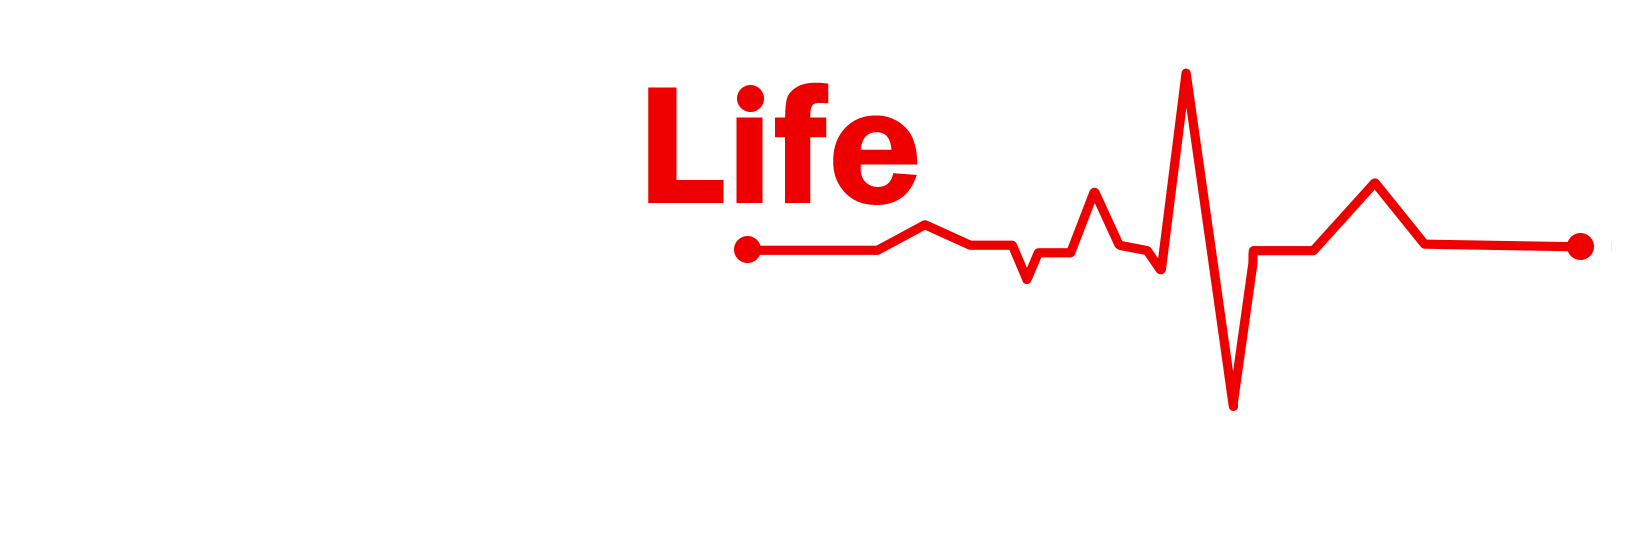 Cardiac Life